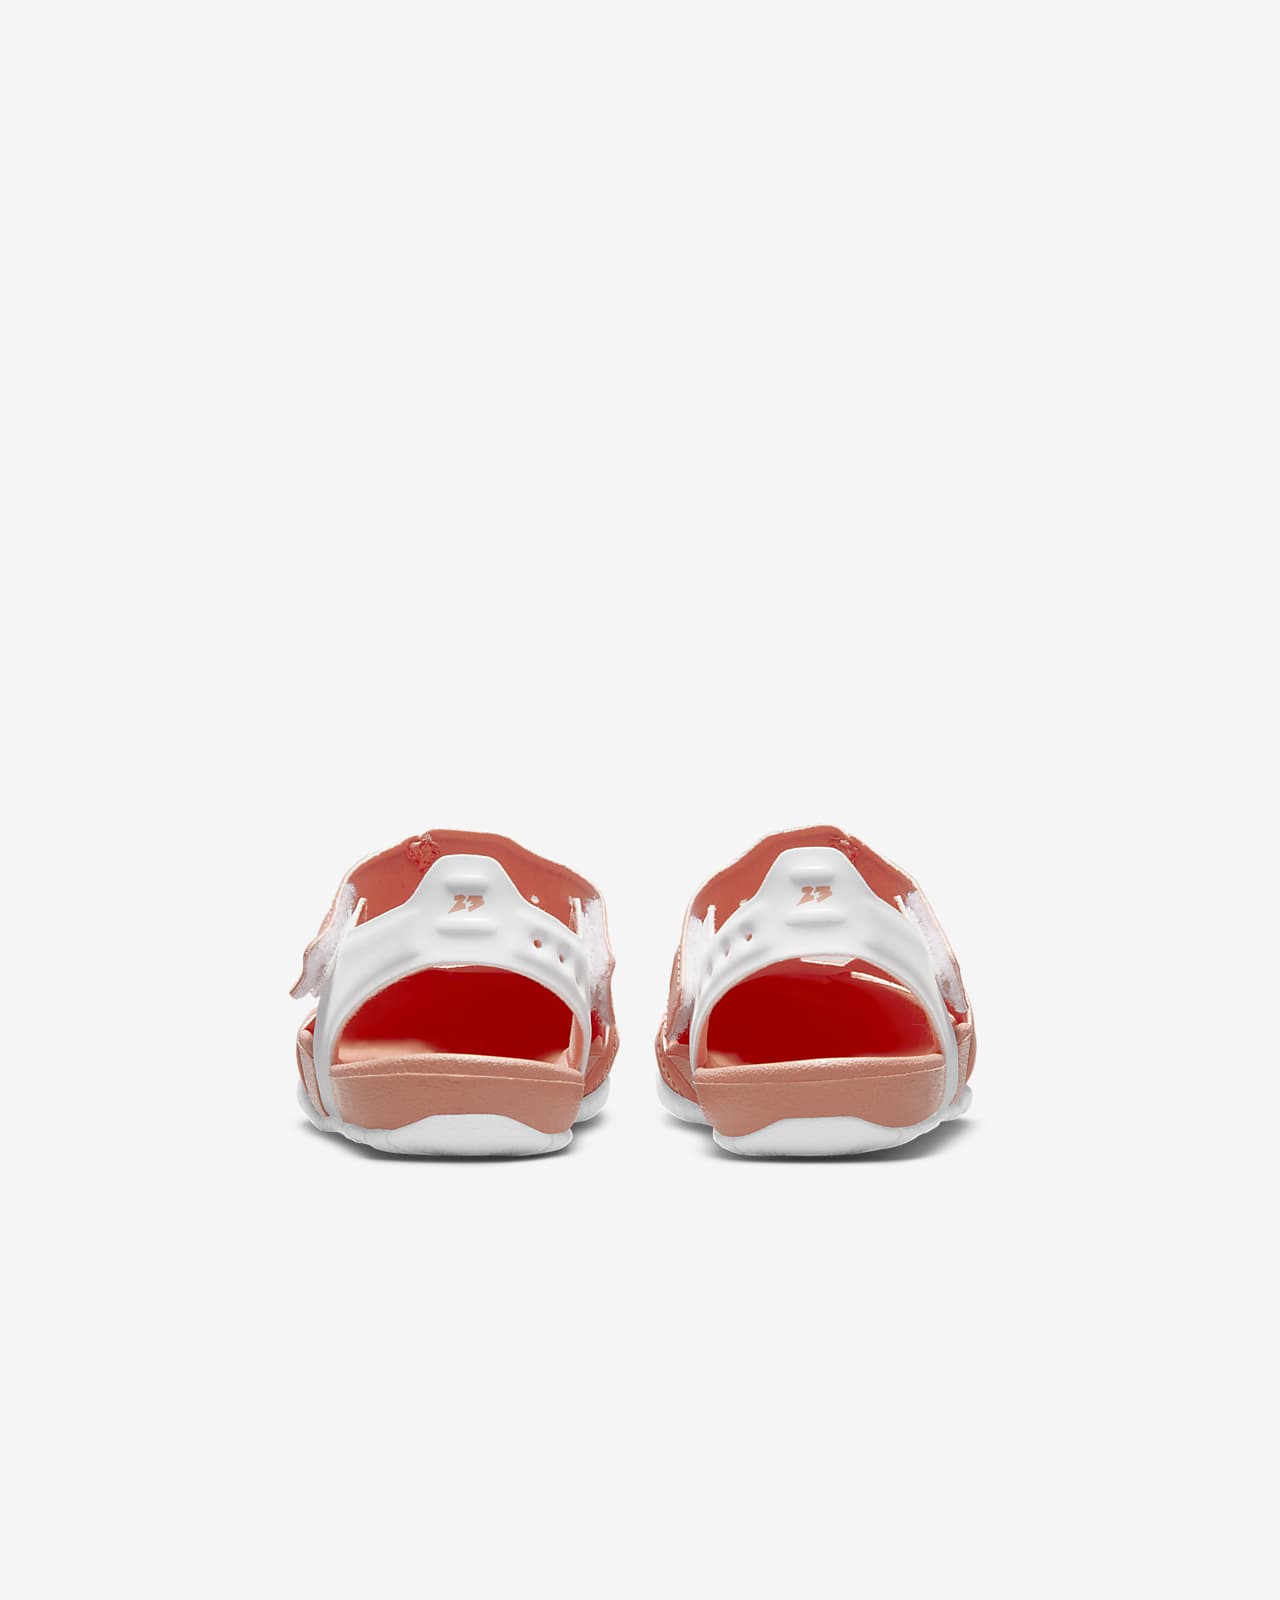 infant jordan shoes size 2c